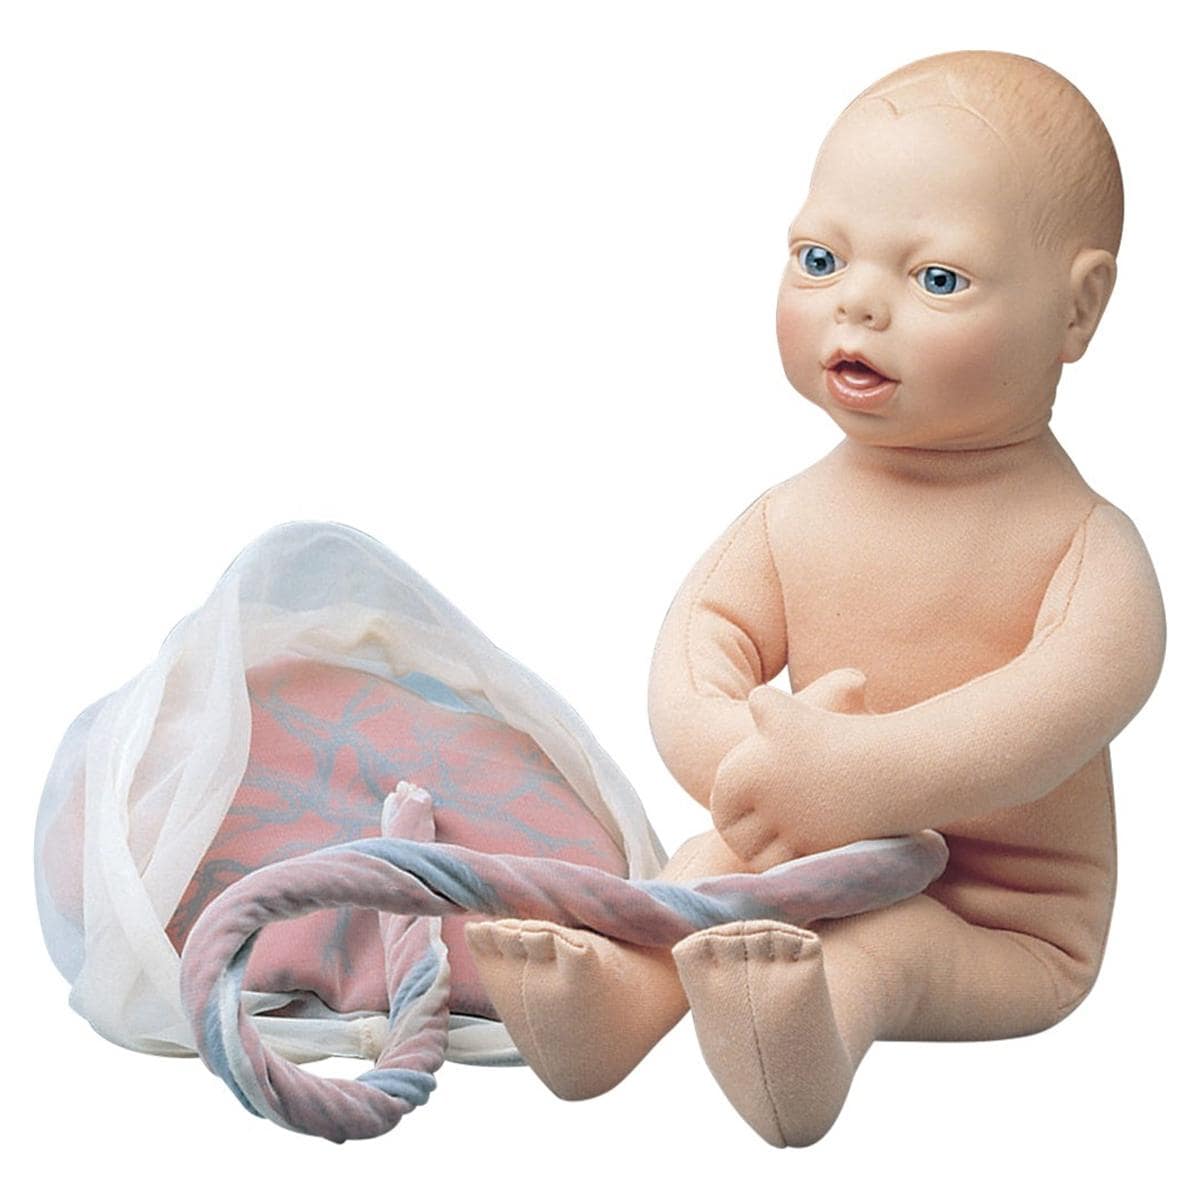 Anatomisch model foetus - per stuk